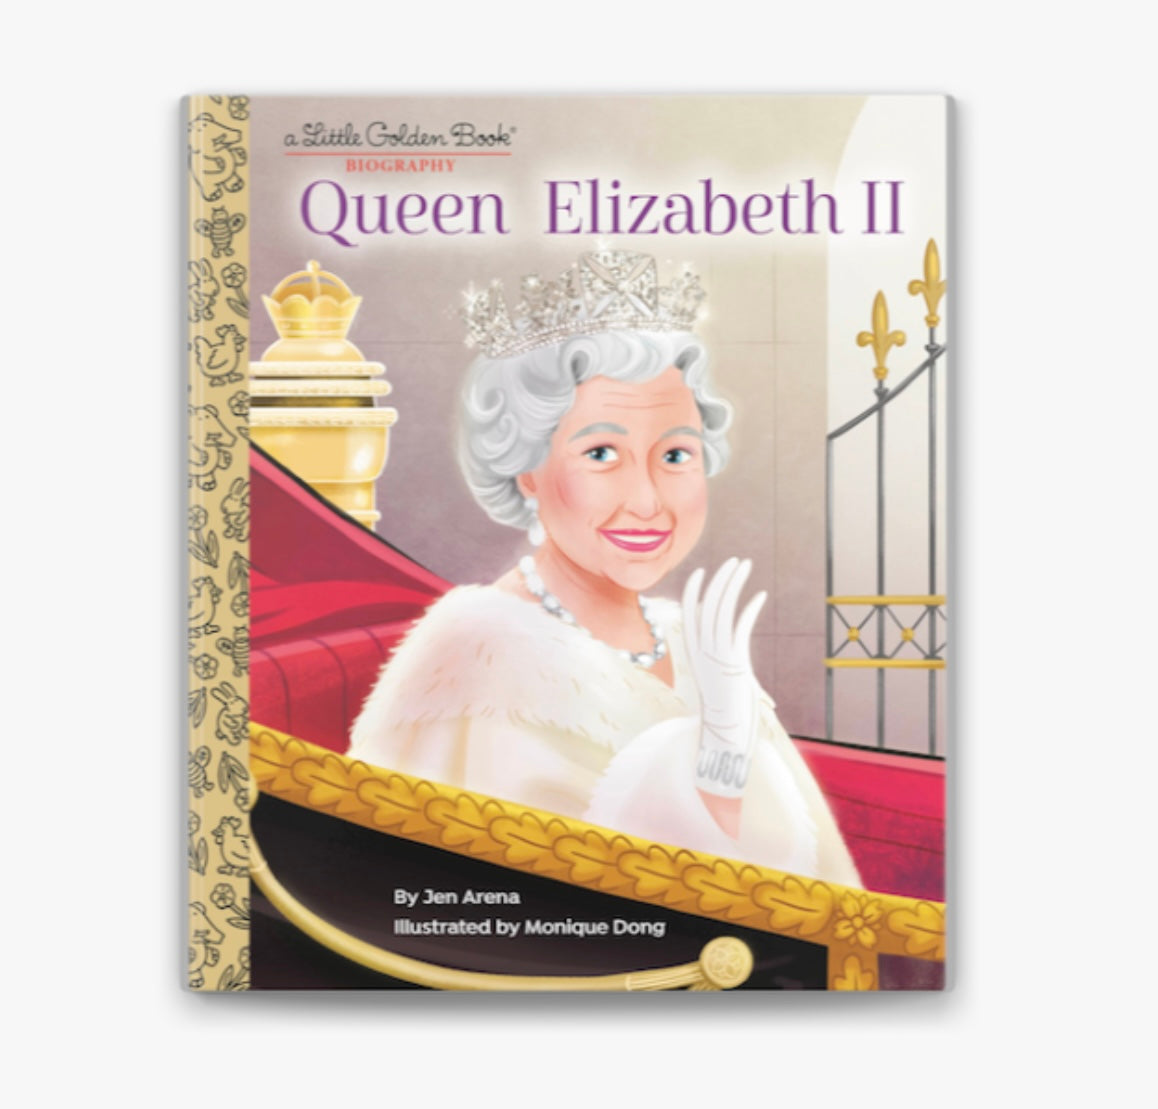 Queen Elizabeth II Little Golden Book Biography